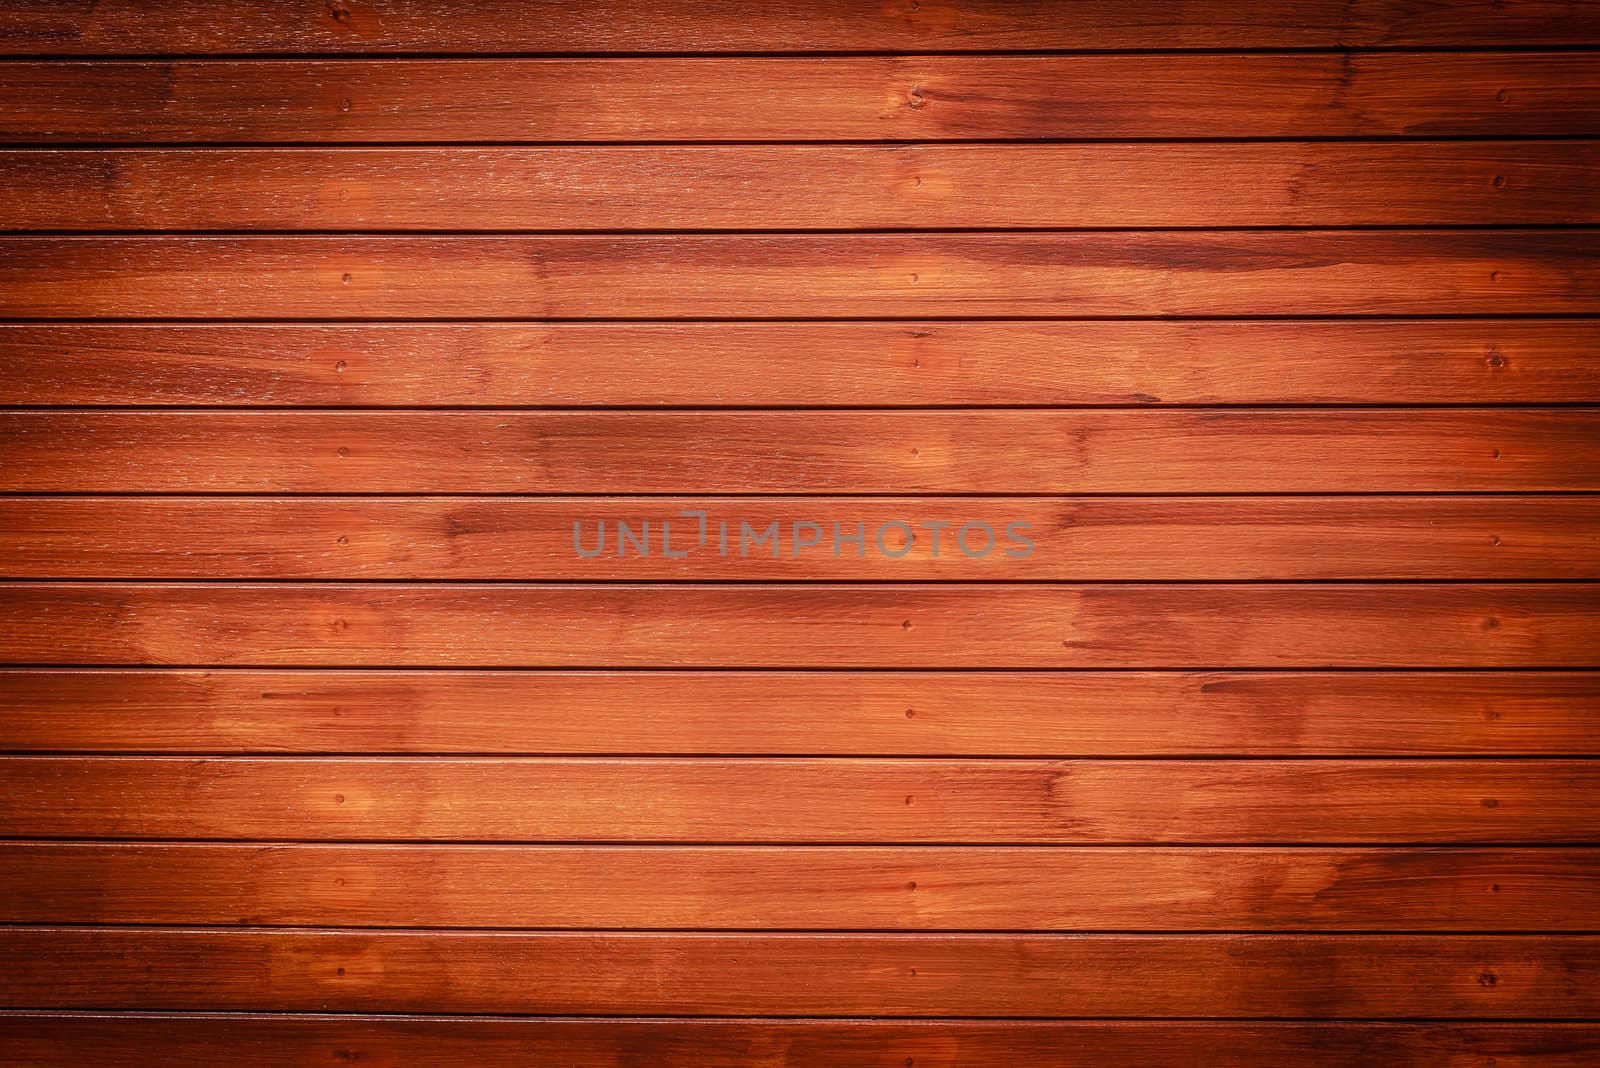 Dark Brown Wood Background, Horizontal Pattern by punpleng